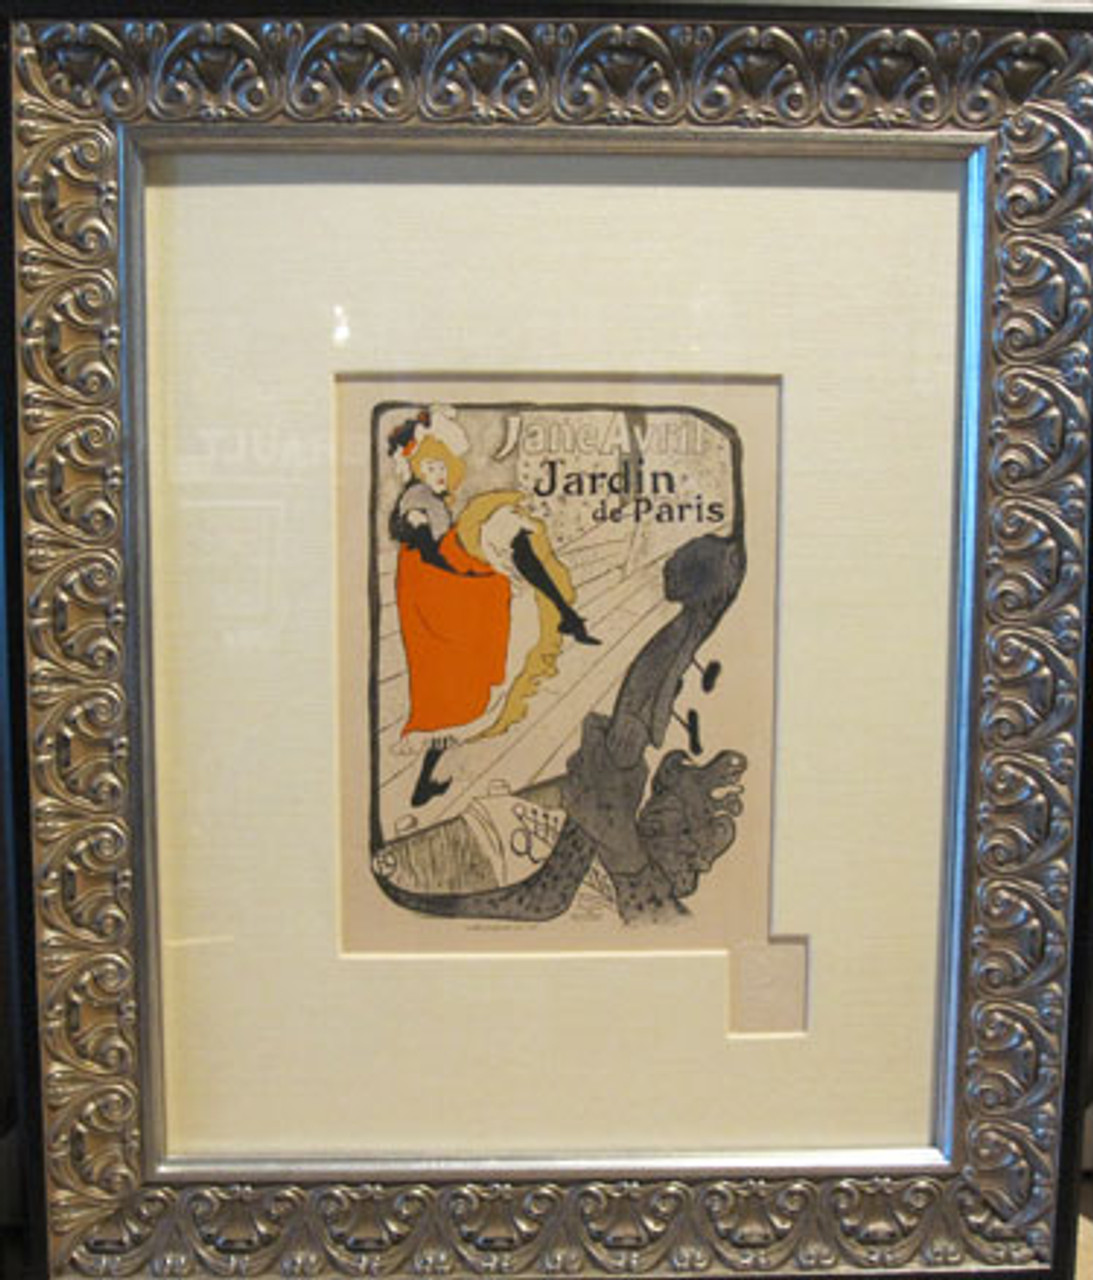 Henri de Toulouse- Lautrec Jane Avril Jardin de Paris original Maitre De L'Affiche Plate 110 from 1898 France. Original Vintage Rare Posters.